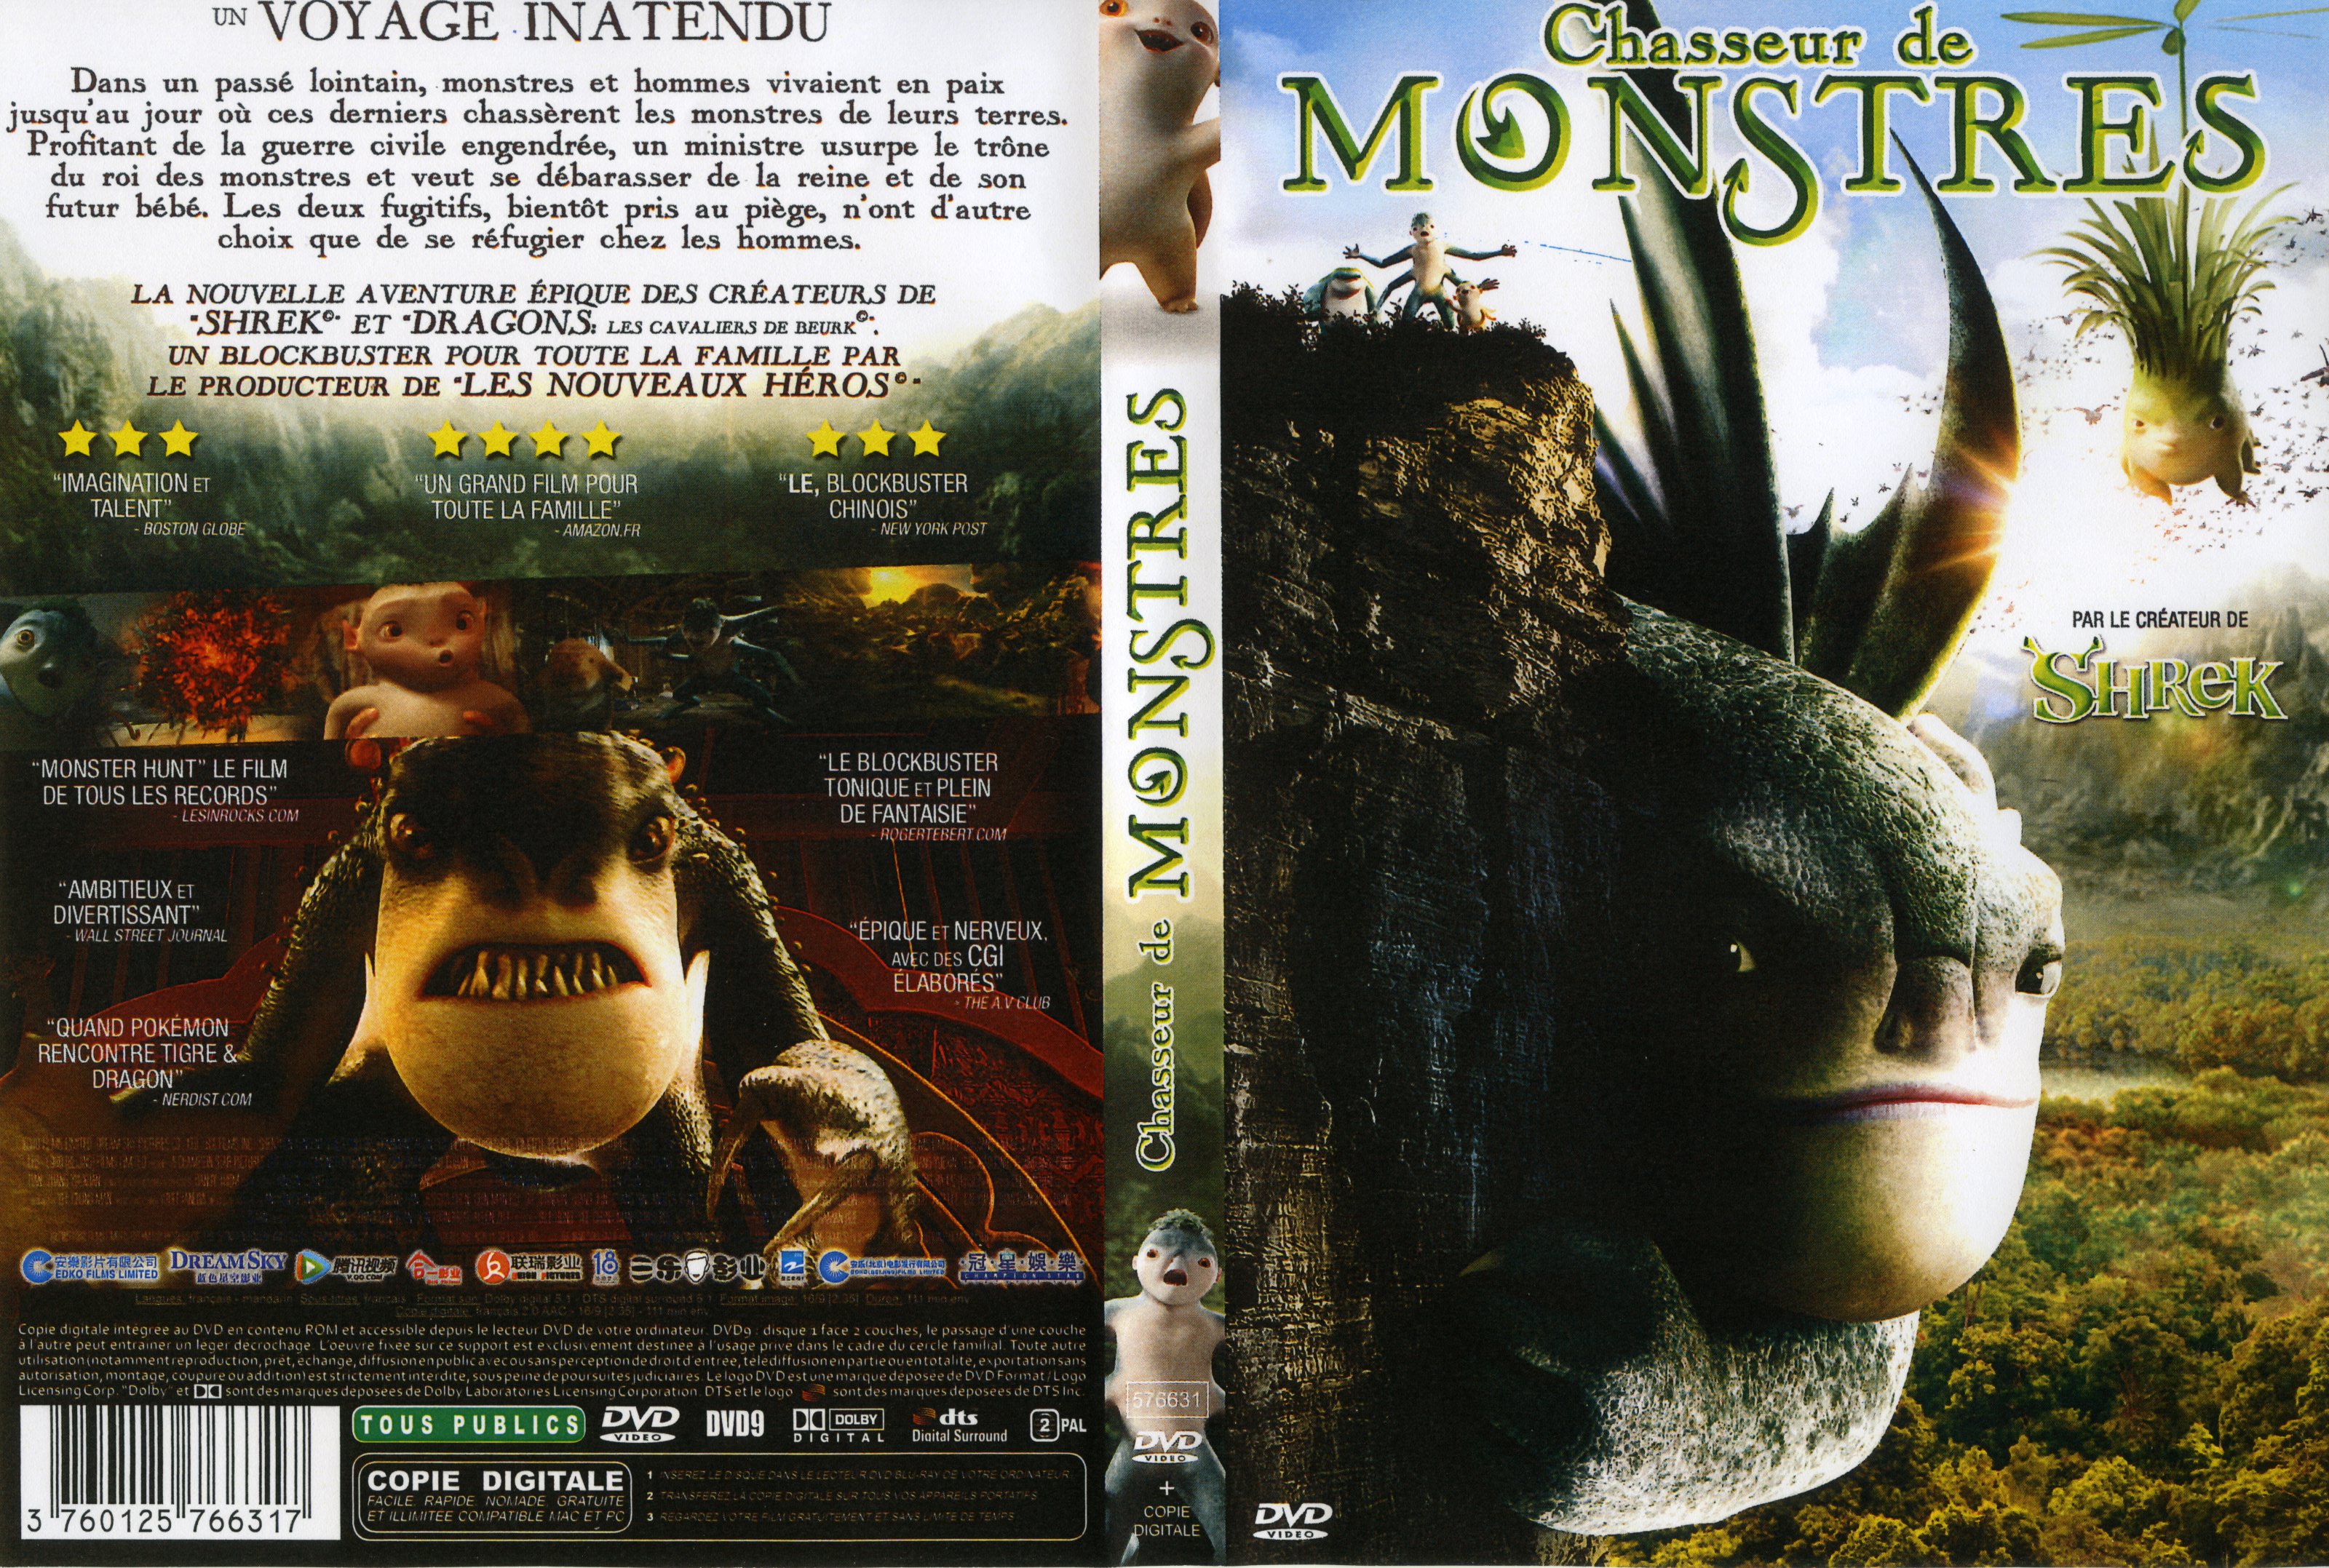 Jaquette DVD Chasseur de monstres